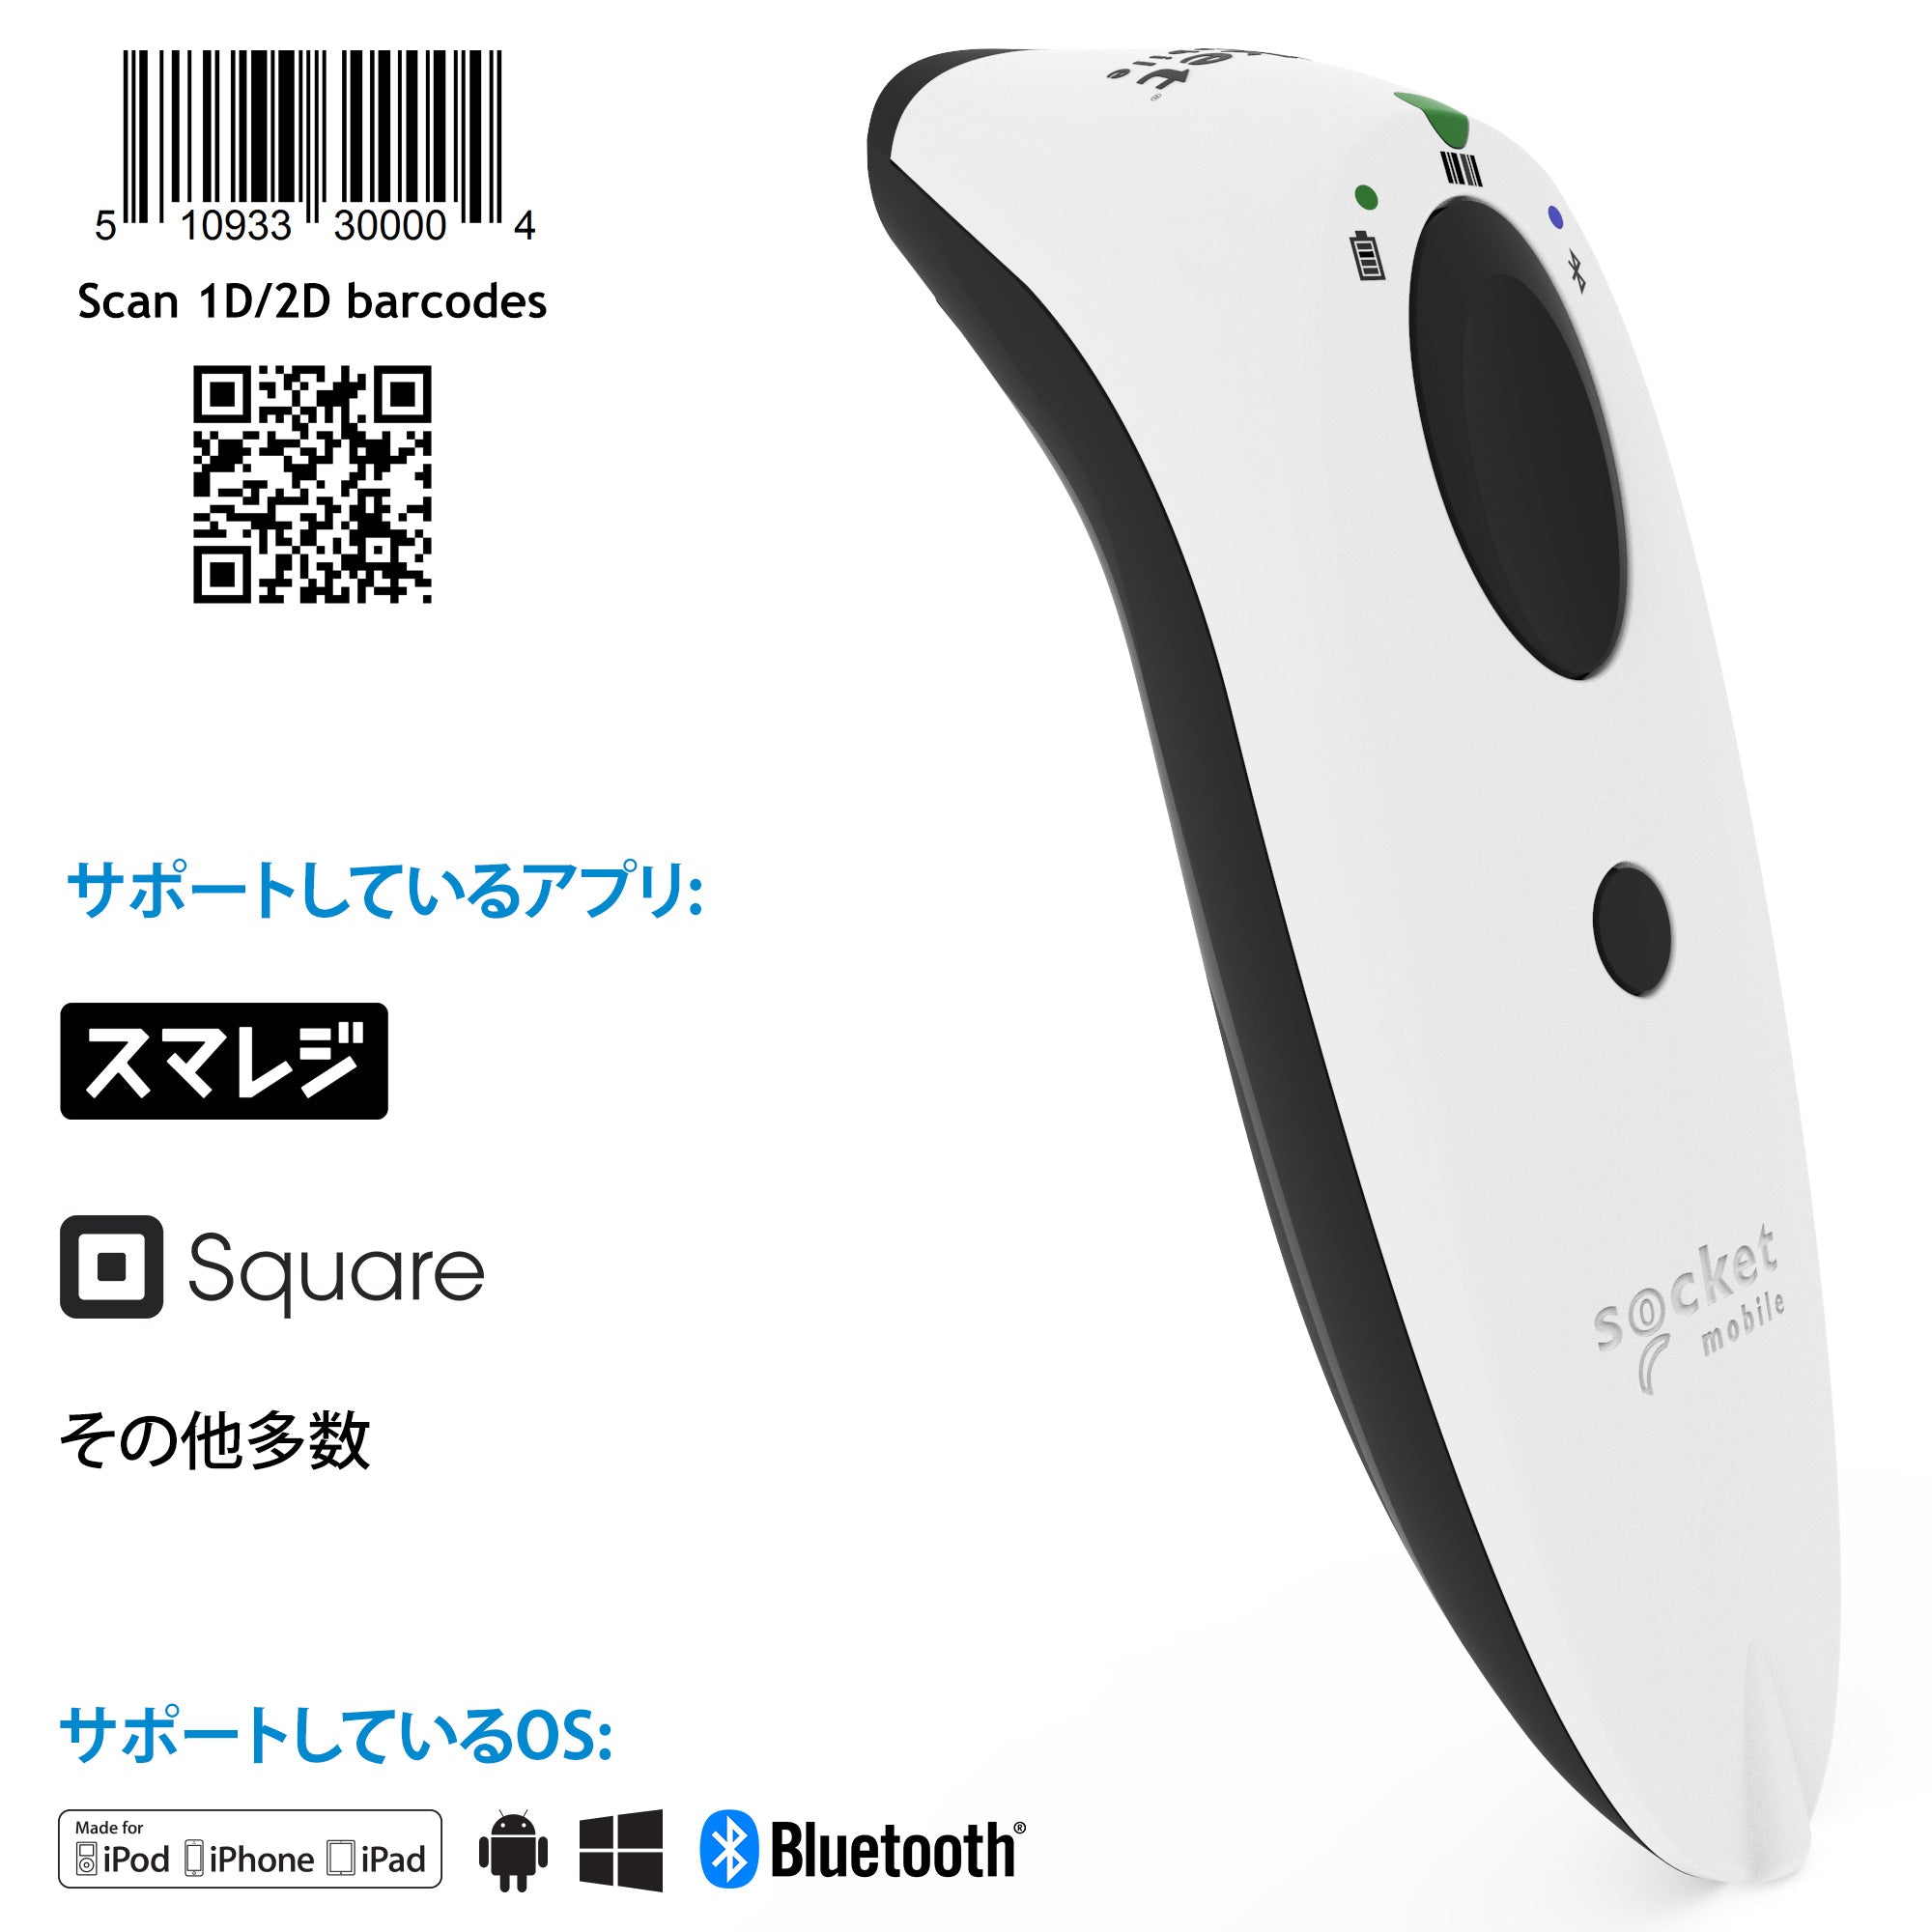 オリジナルデザイン手作り商品 バーコードリーダー S740 Bluetooth 充電スタンド付